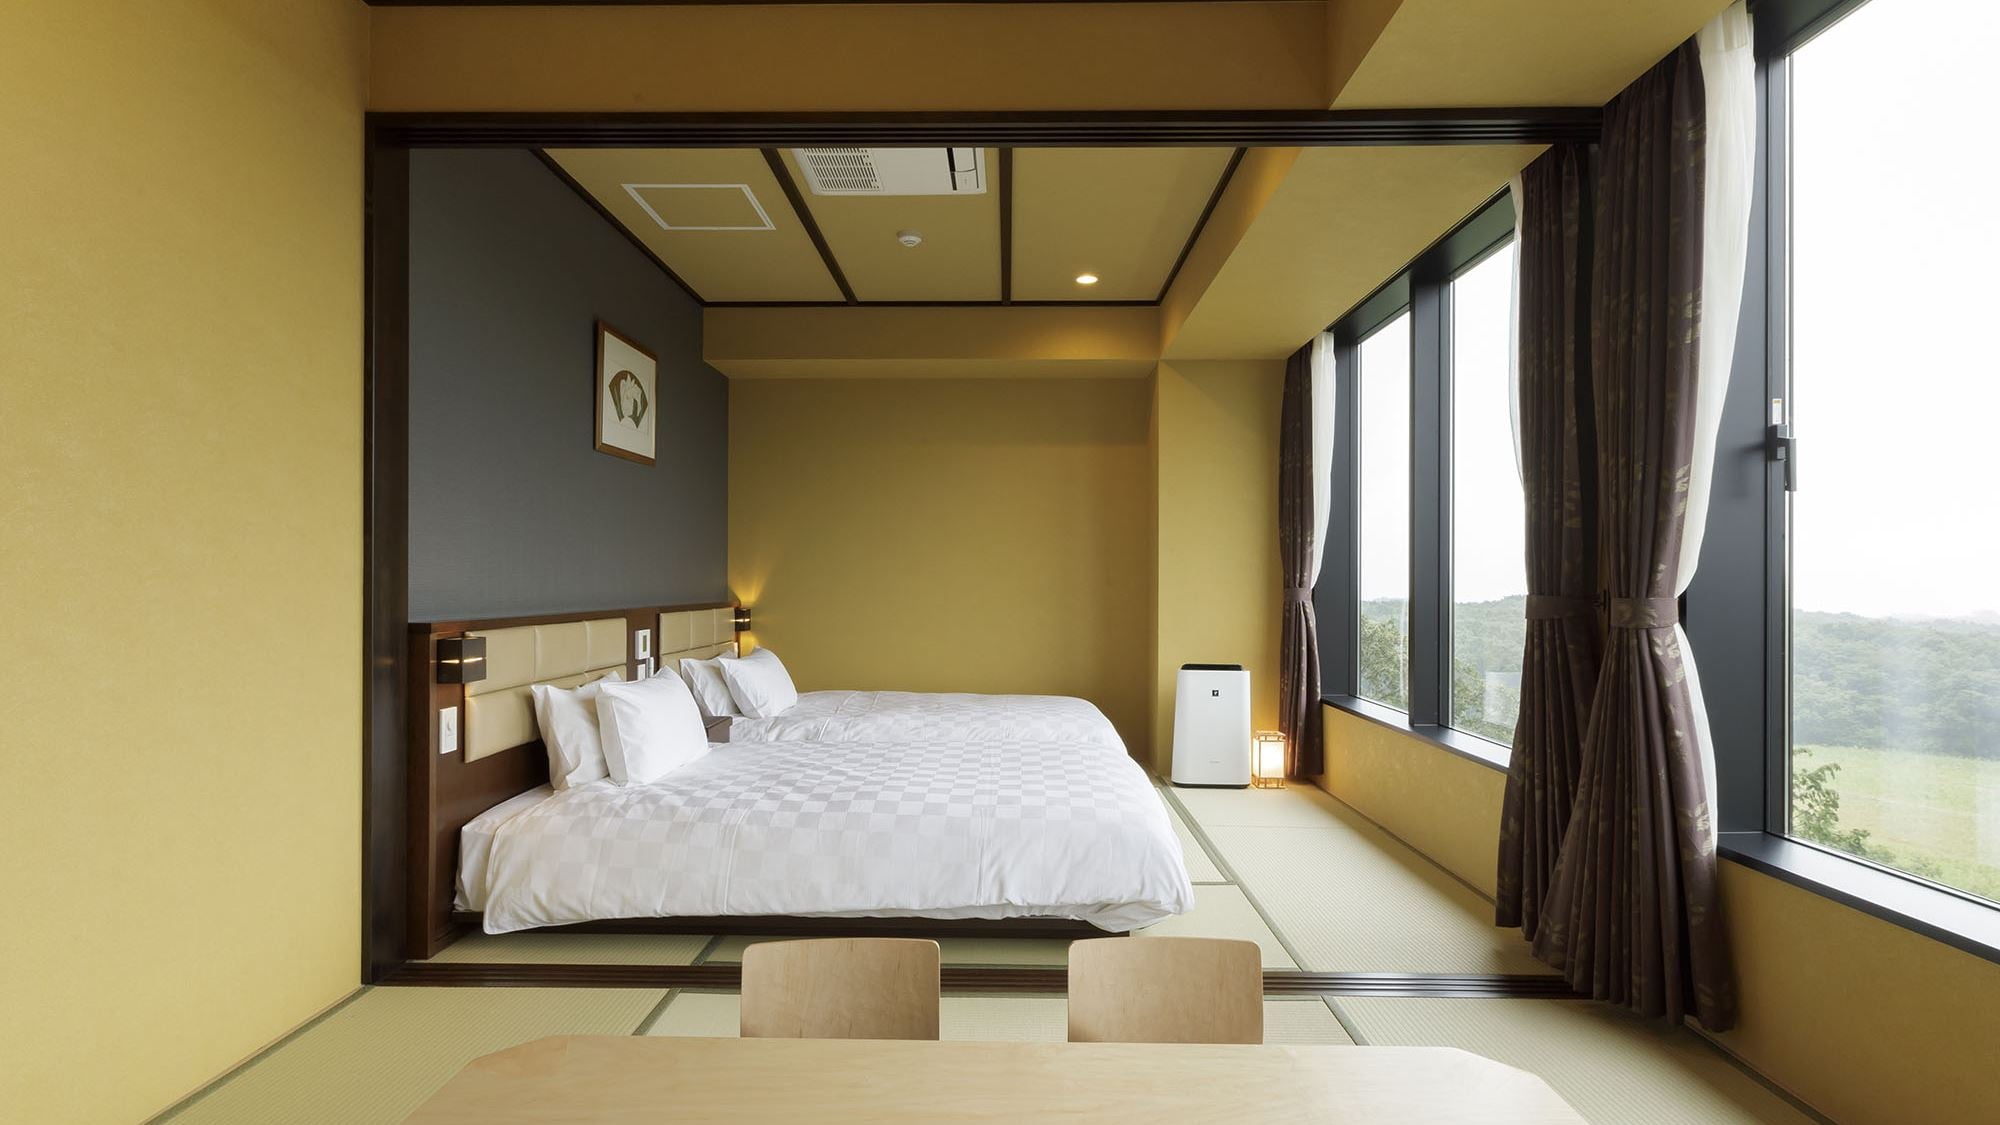 Superior A [Kamar bergaya Jepang + kamar twin bergaya Jepang] Kamar tidur dengan dua tempat tidur bergaya Jepang di lantai tikar tatami dan kamar bergaya Jepang dengan kamar terusan.